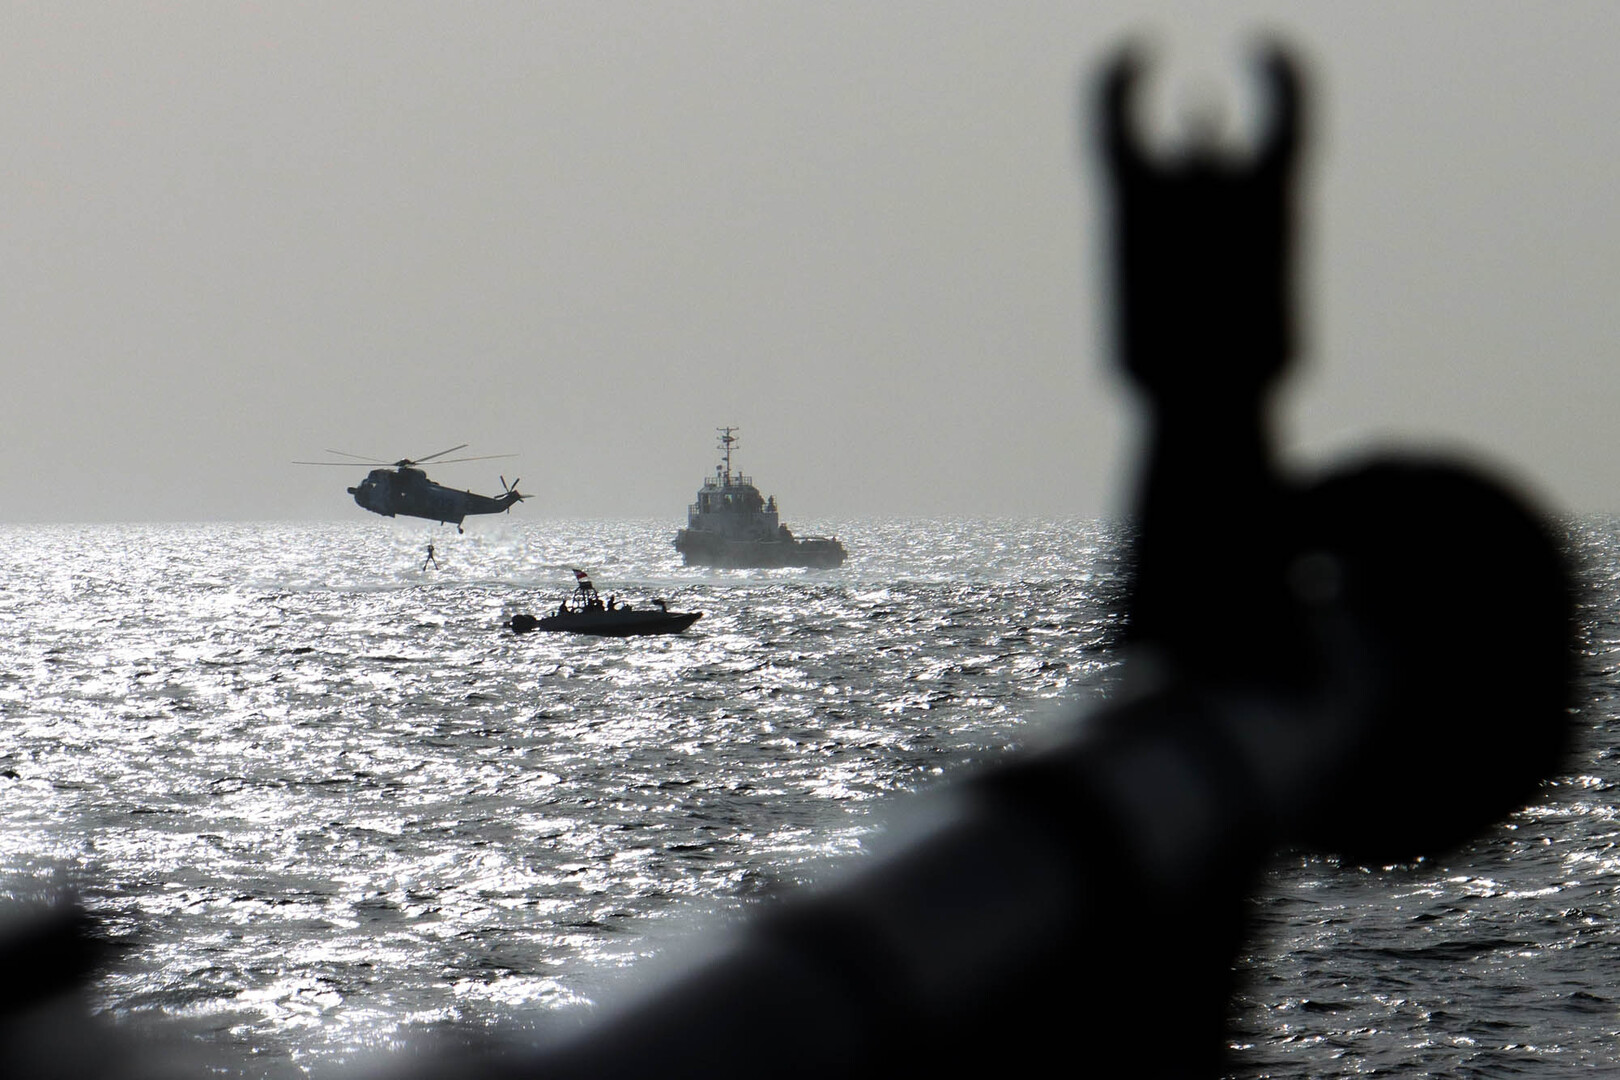 هيئة بحرية بريطانية توجه تحذيرا للسفن في الخليج وغرب المحيط الهندي